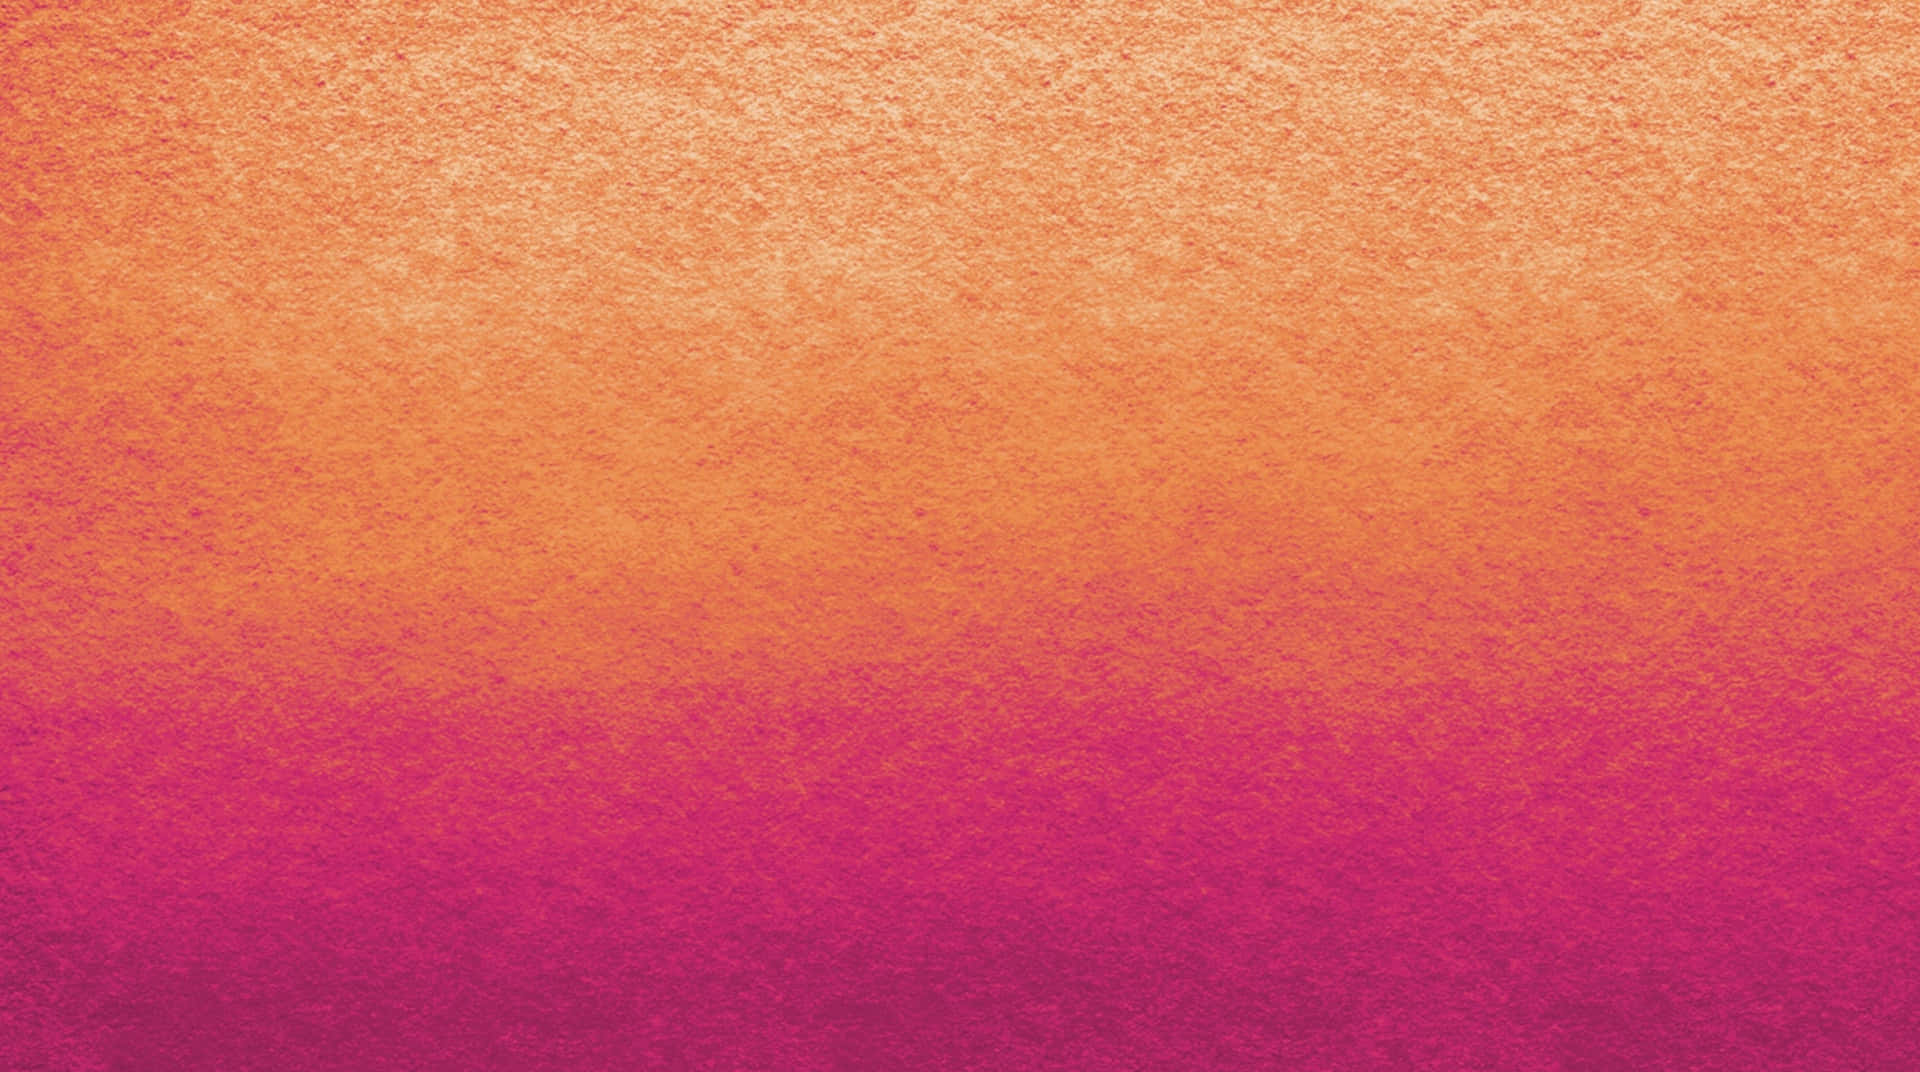 Pinkto Orange Gradient Texture Wallpaper